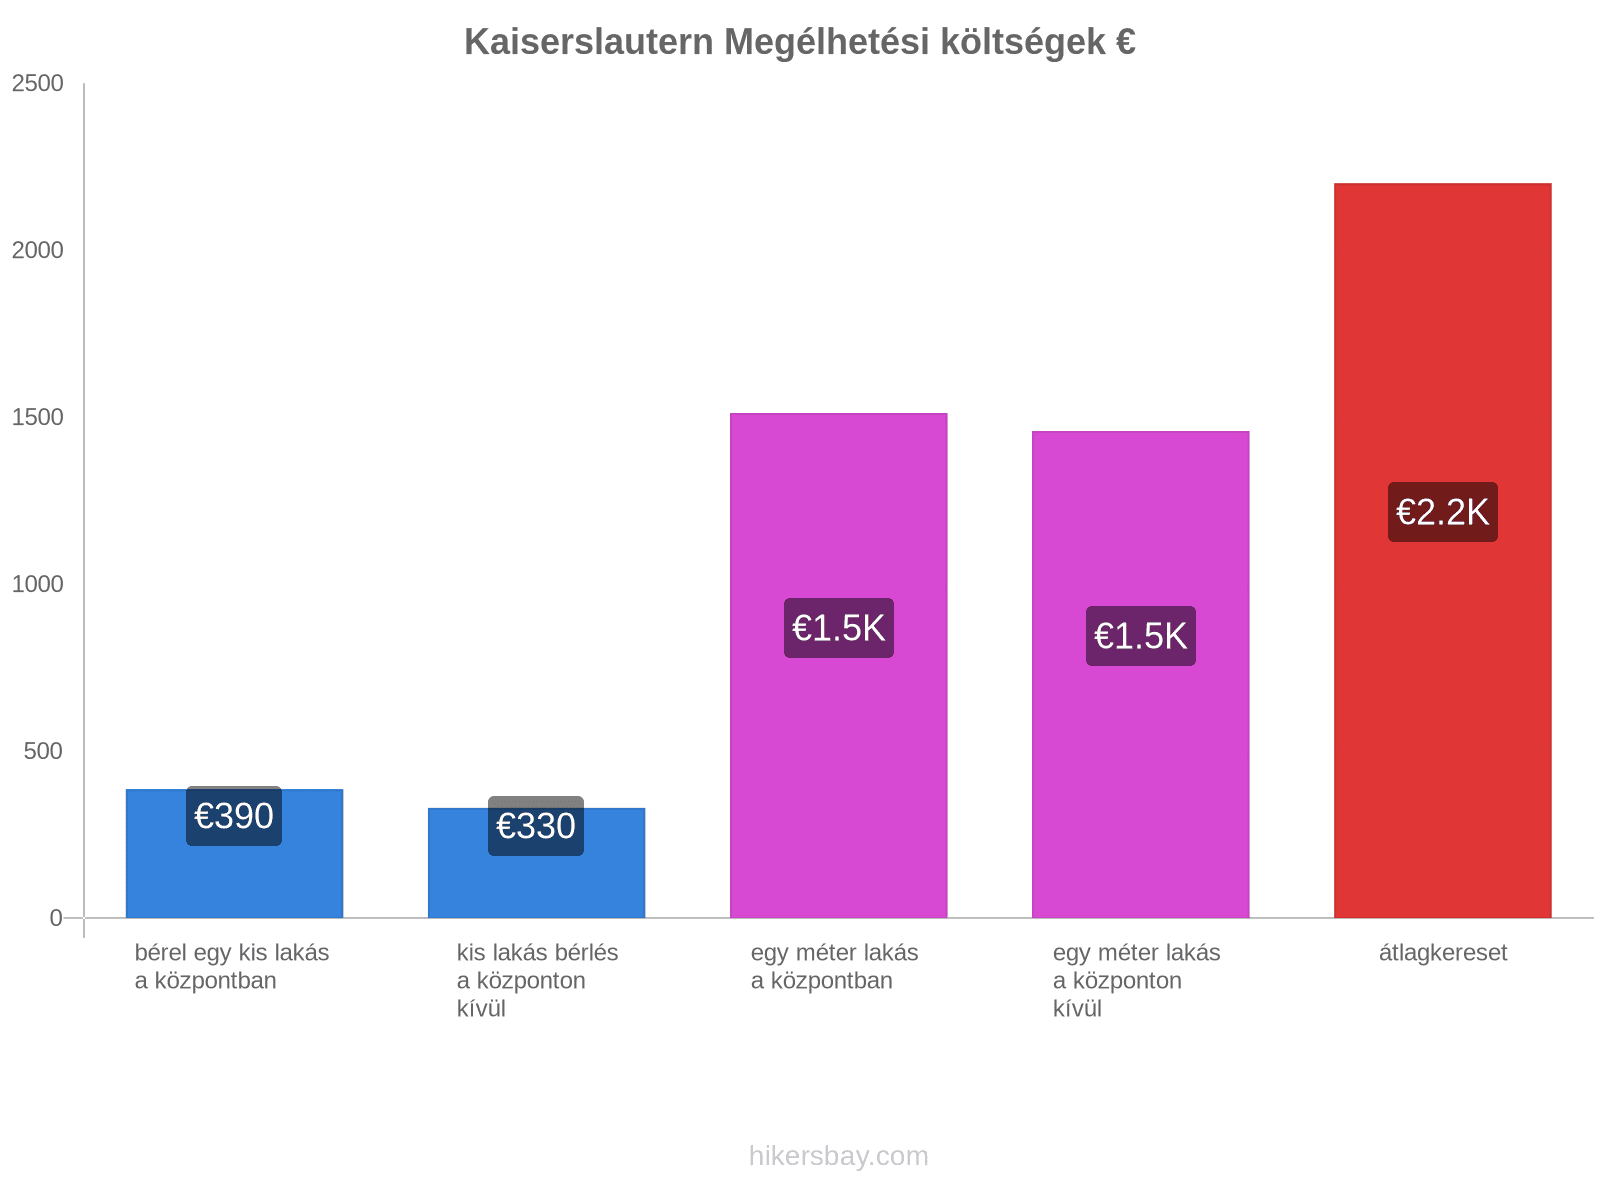 Kaiserslautern megélhetési költségek hikersbay.com